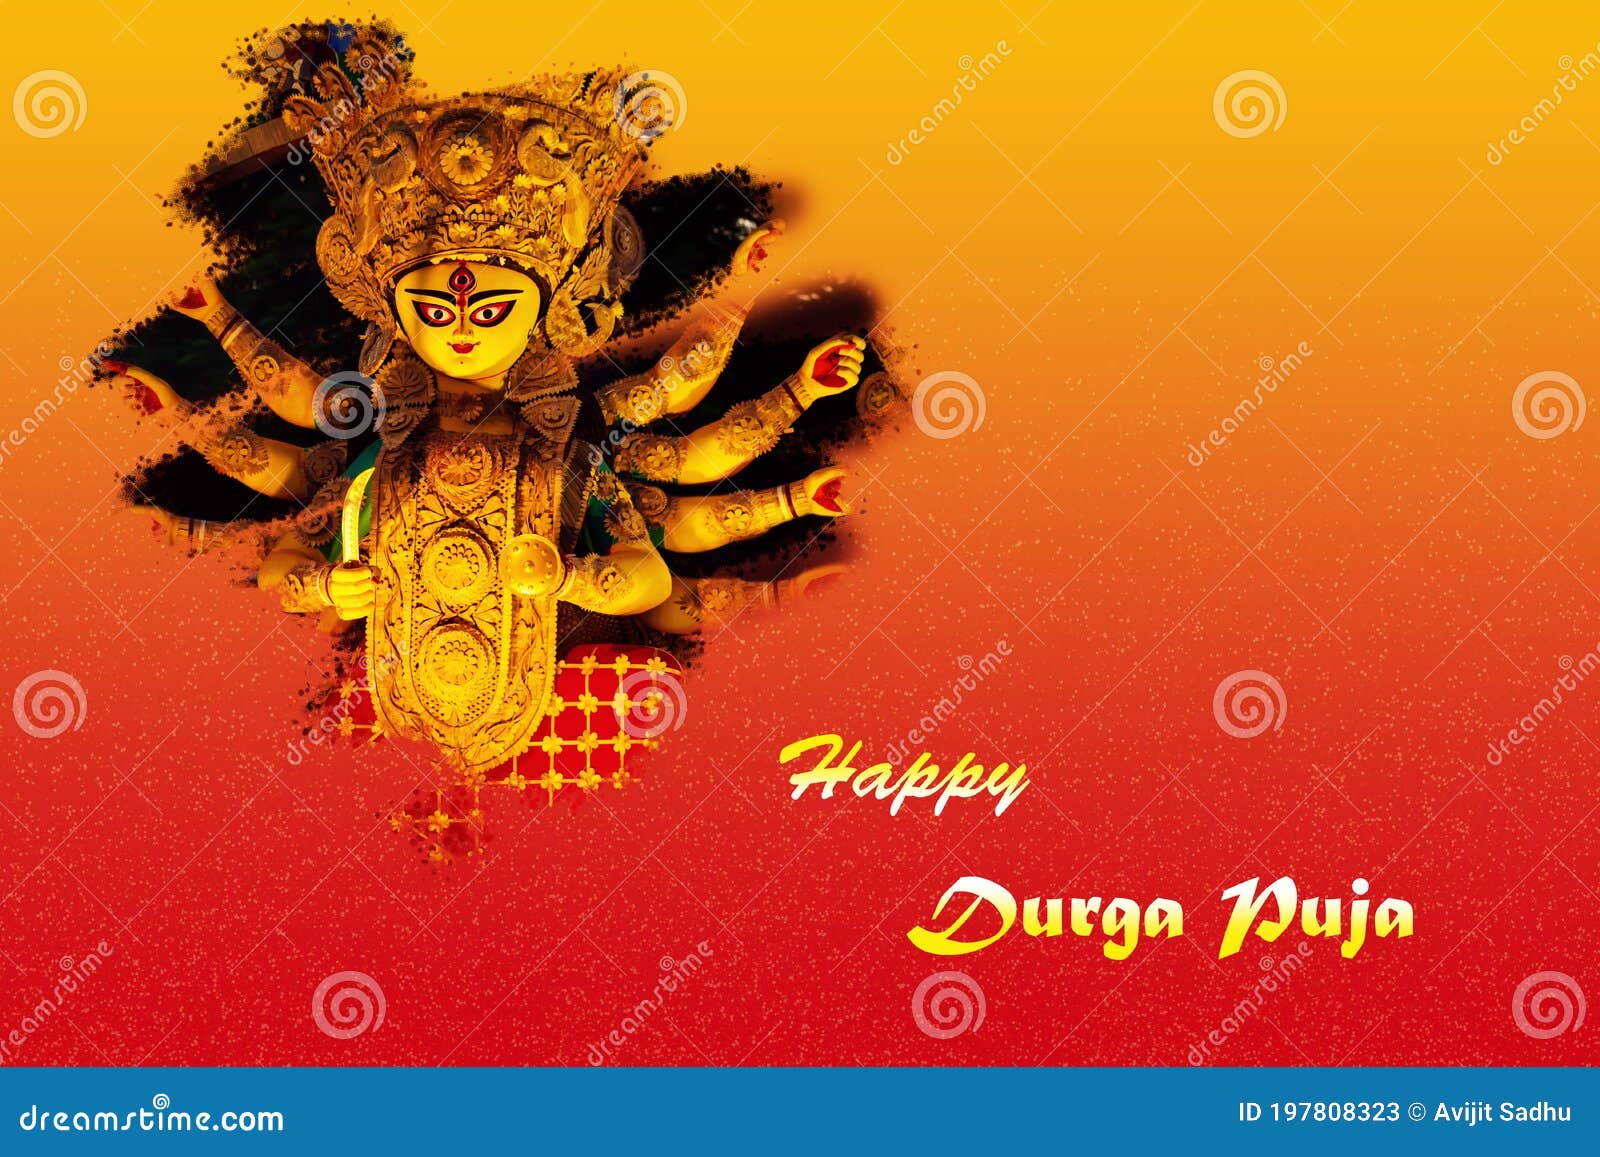 Chào đón lễ Durgapuja năm nay với những banner chúc mừng đầy sáng tạo và độc đáo. Hình ảnh thiết kế bắt mắt này sẽ mang lại sự cảm hứng cho bất kỳ ai đang chuẩn bị cho lễ hội sắp tới. 